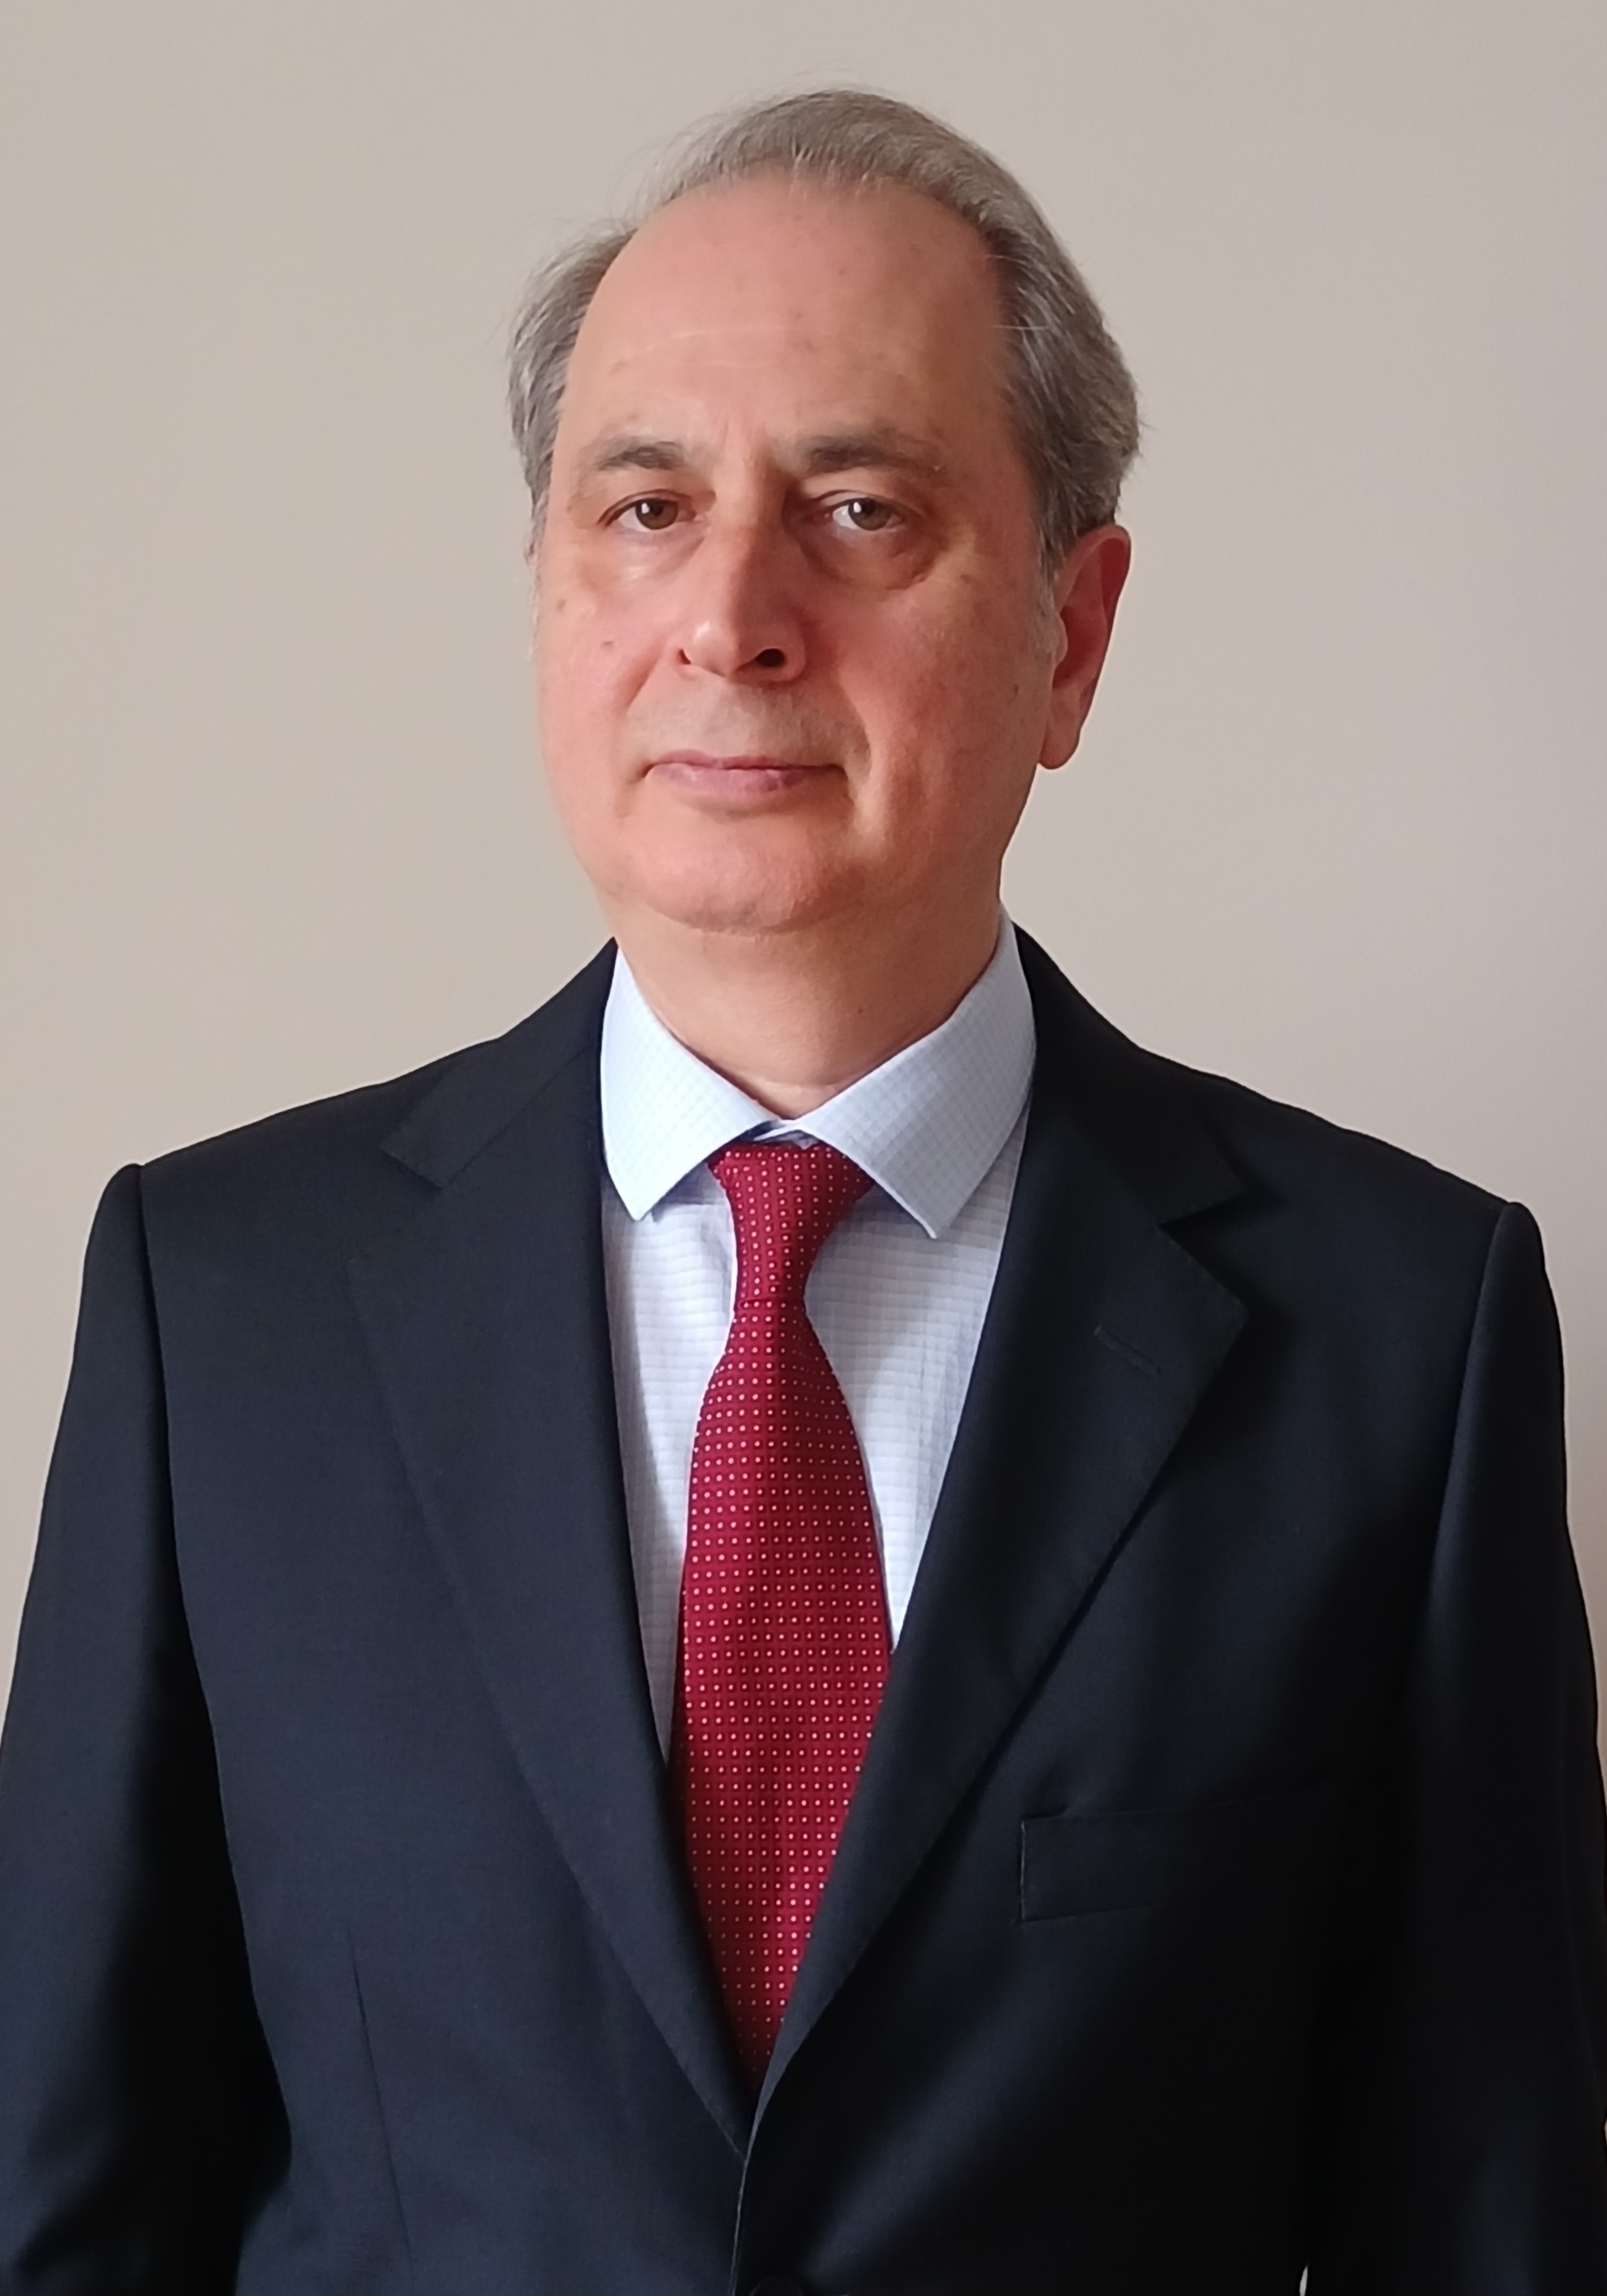 Anadolu Hayat Emeklilik Board Member Prof. Dr. Nadir Eroğlu